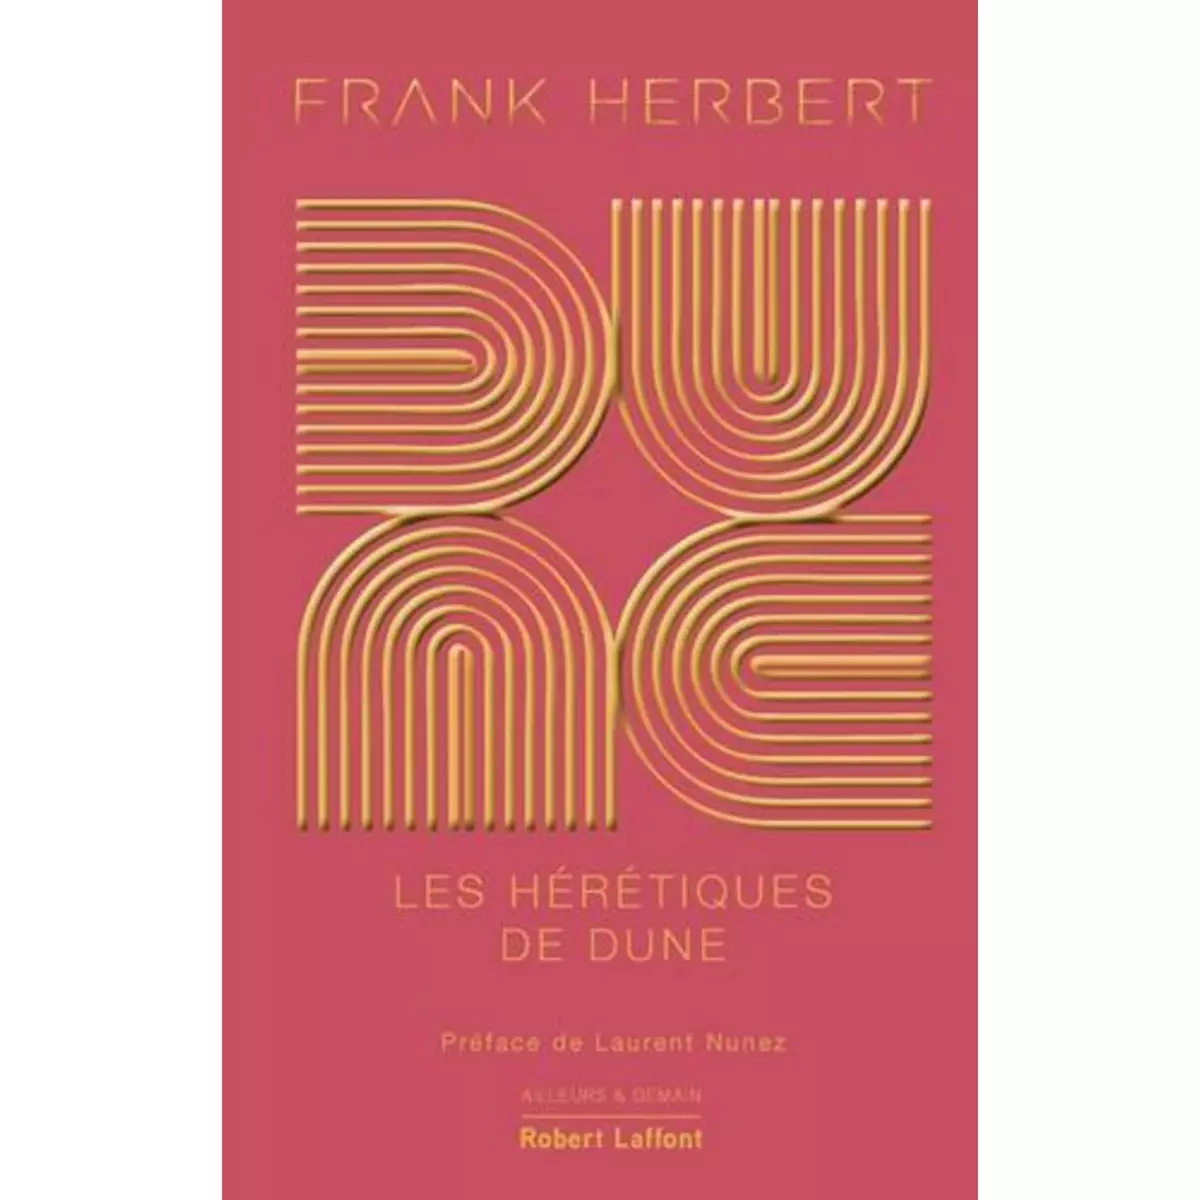  LE CYCLE DE DUNE TOME 5 : LES HERETIQUES DE DUNE. EDITION COLLECTOR, Herbert Frank